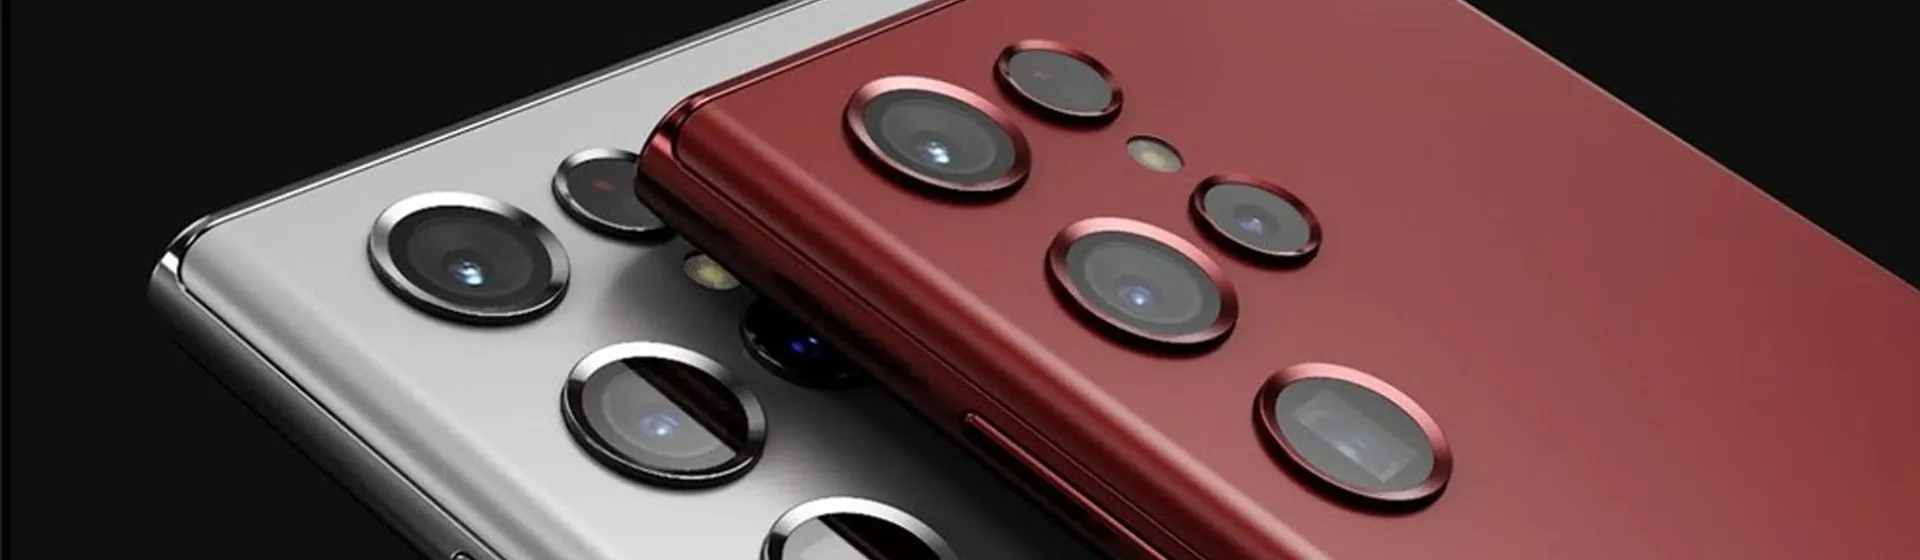  Imagem de dois Galaxy s22, lançamento de celular da Samsung, sobrepostos, um cinza e um vermelho